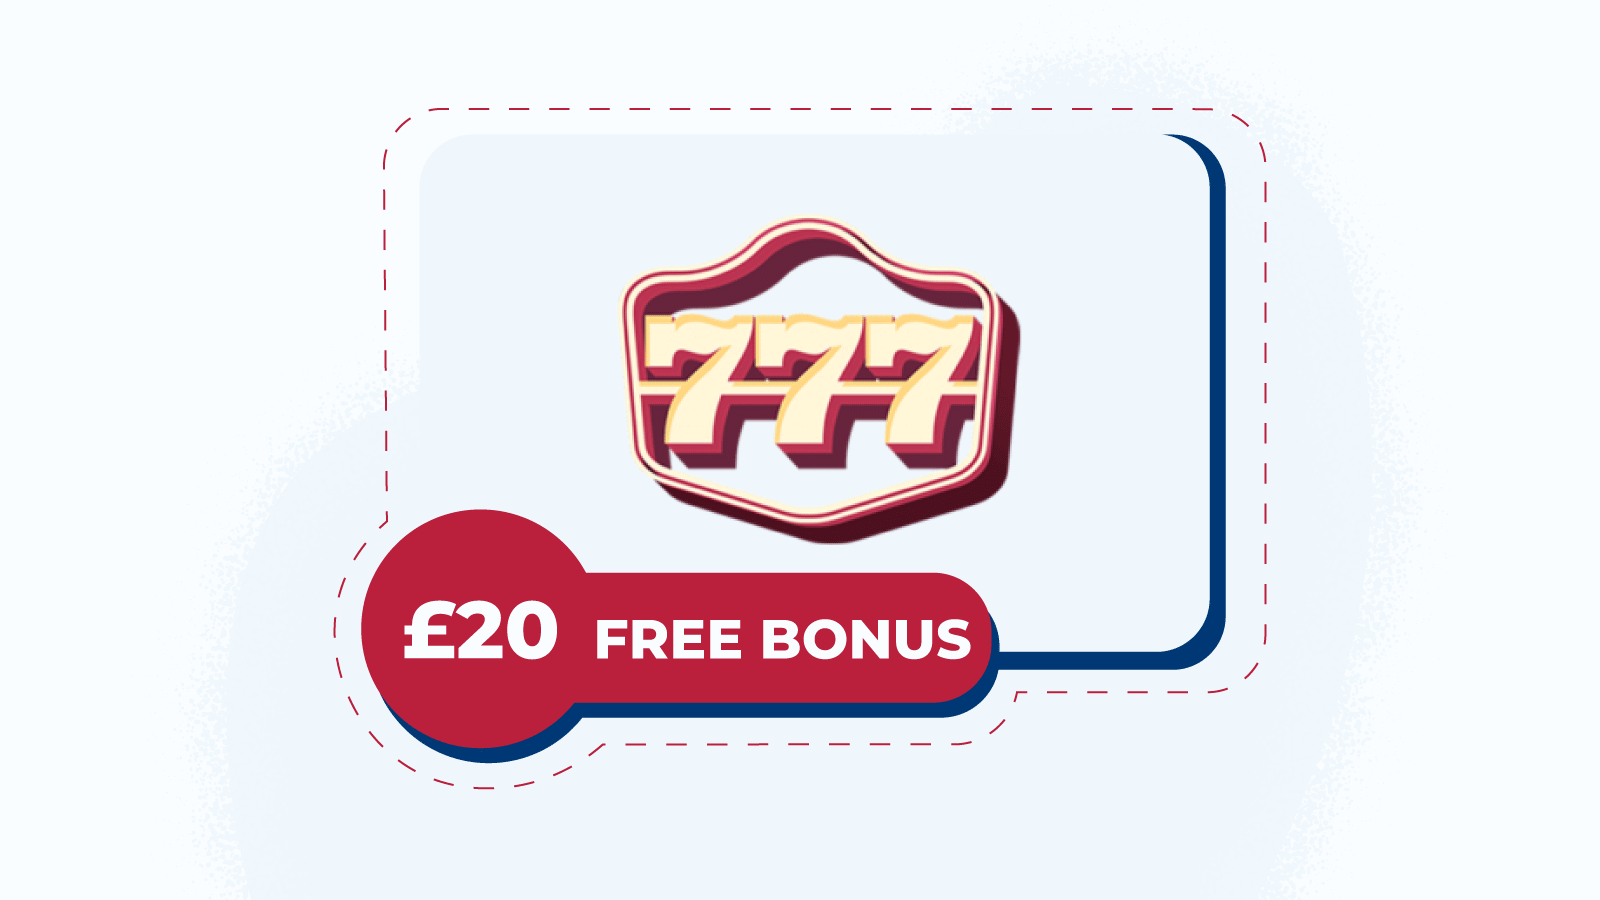 £20 Free Bonus at 777casino has the Biggest No Deposit Value